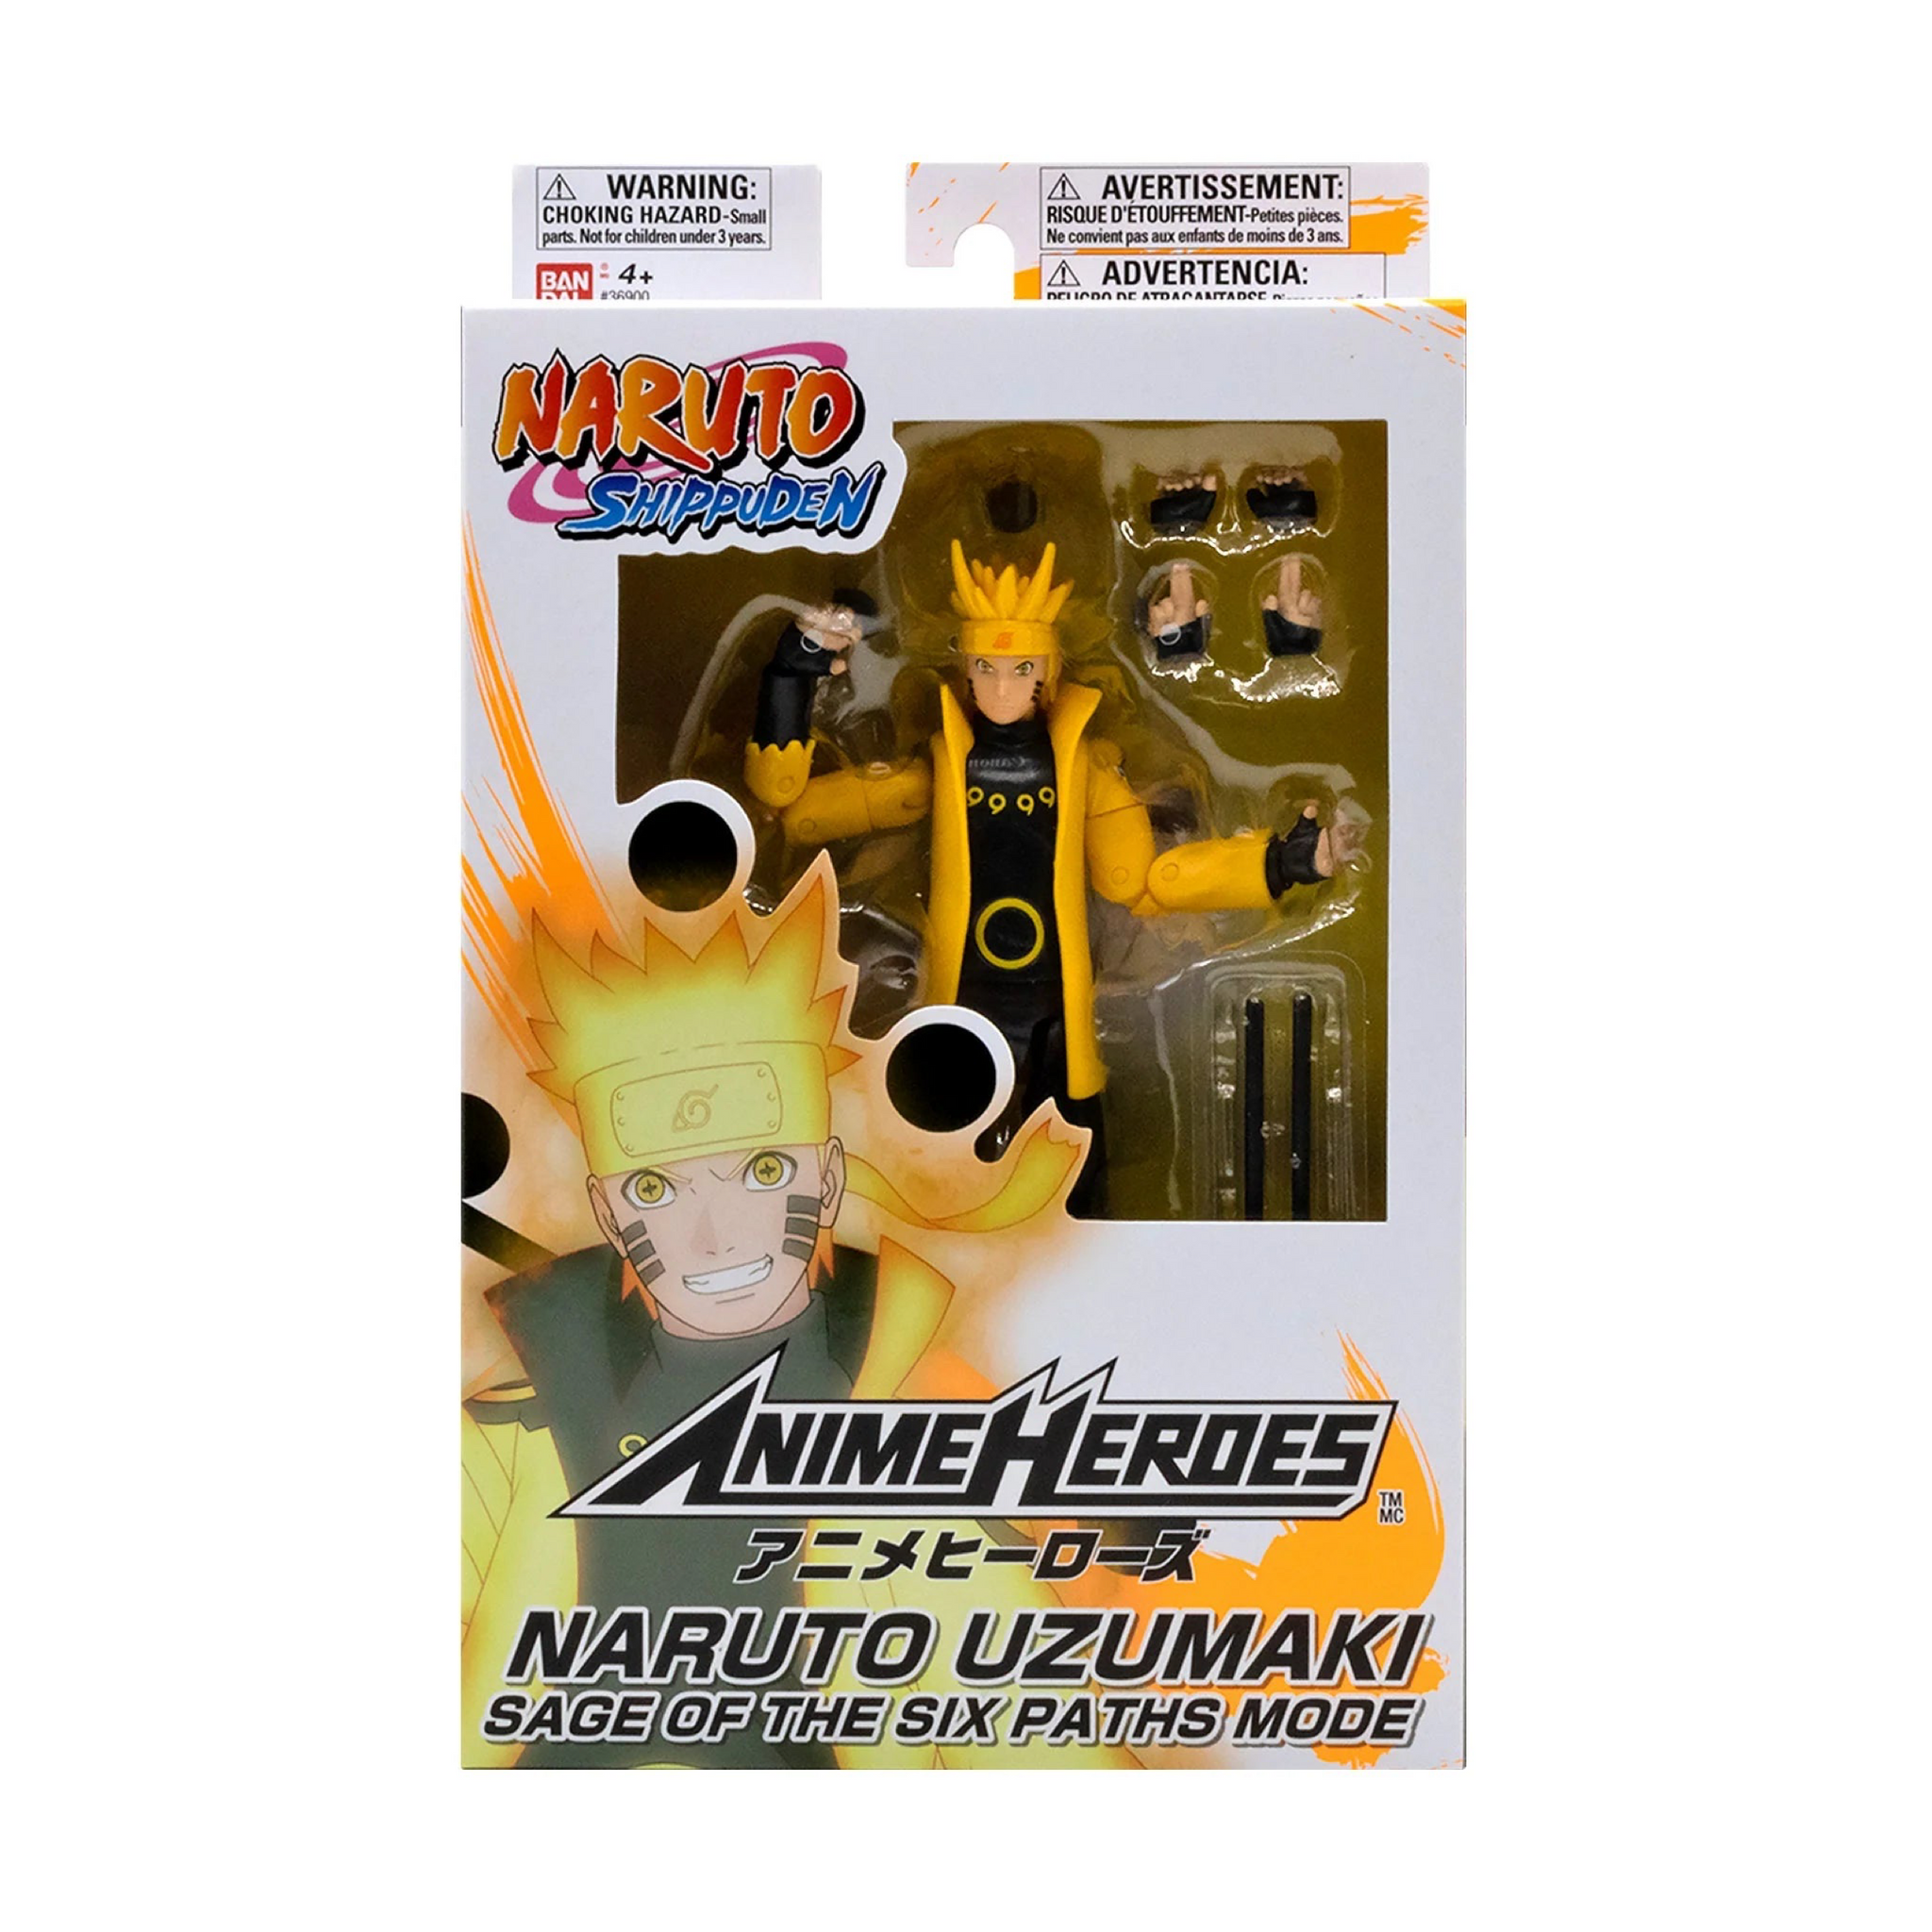 Naruto Shippuden - Figurine Anime Heroes Naruto Uzumaki en mode